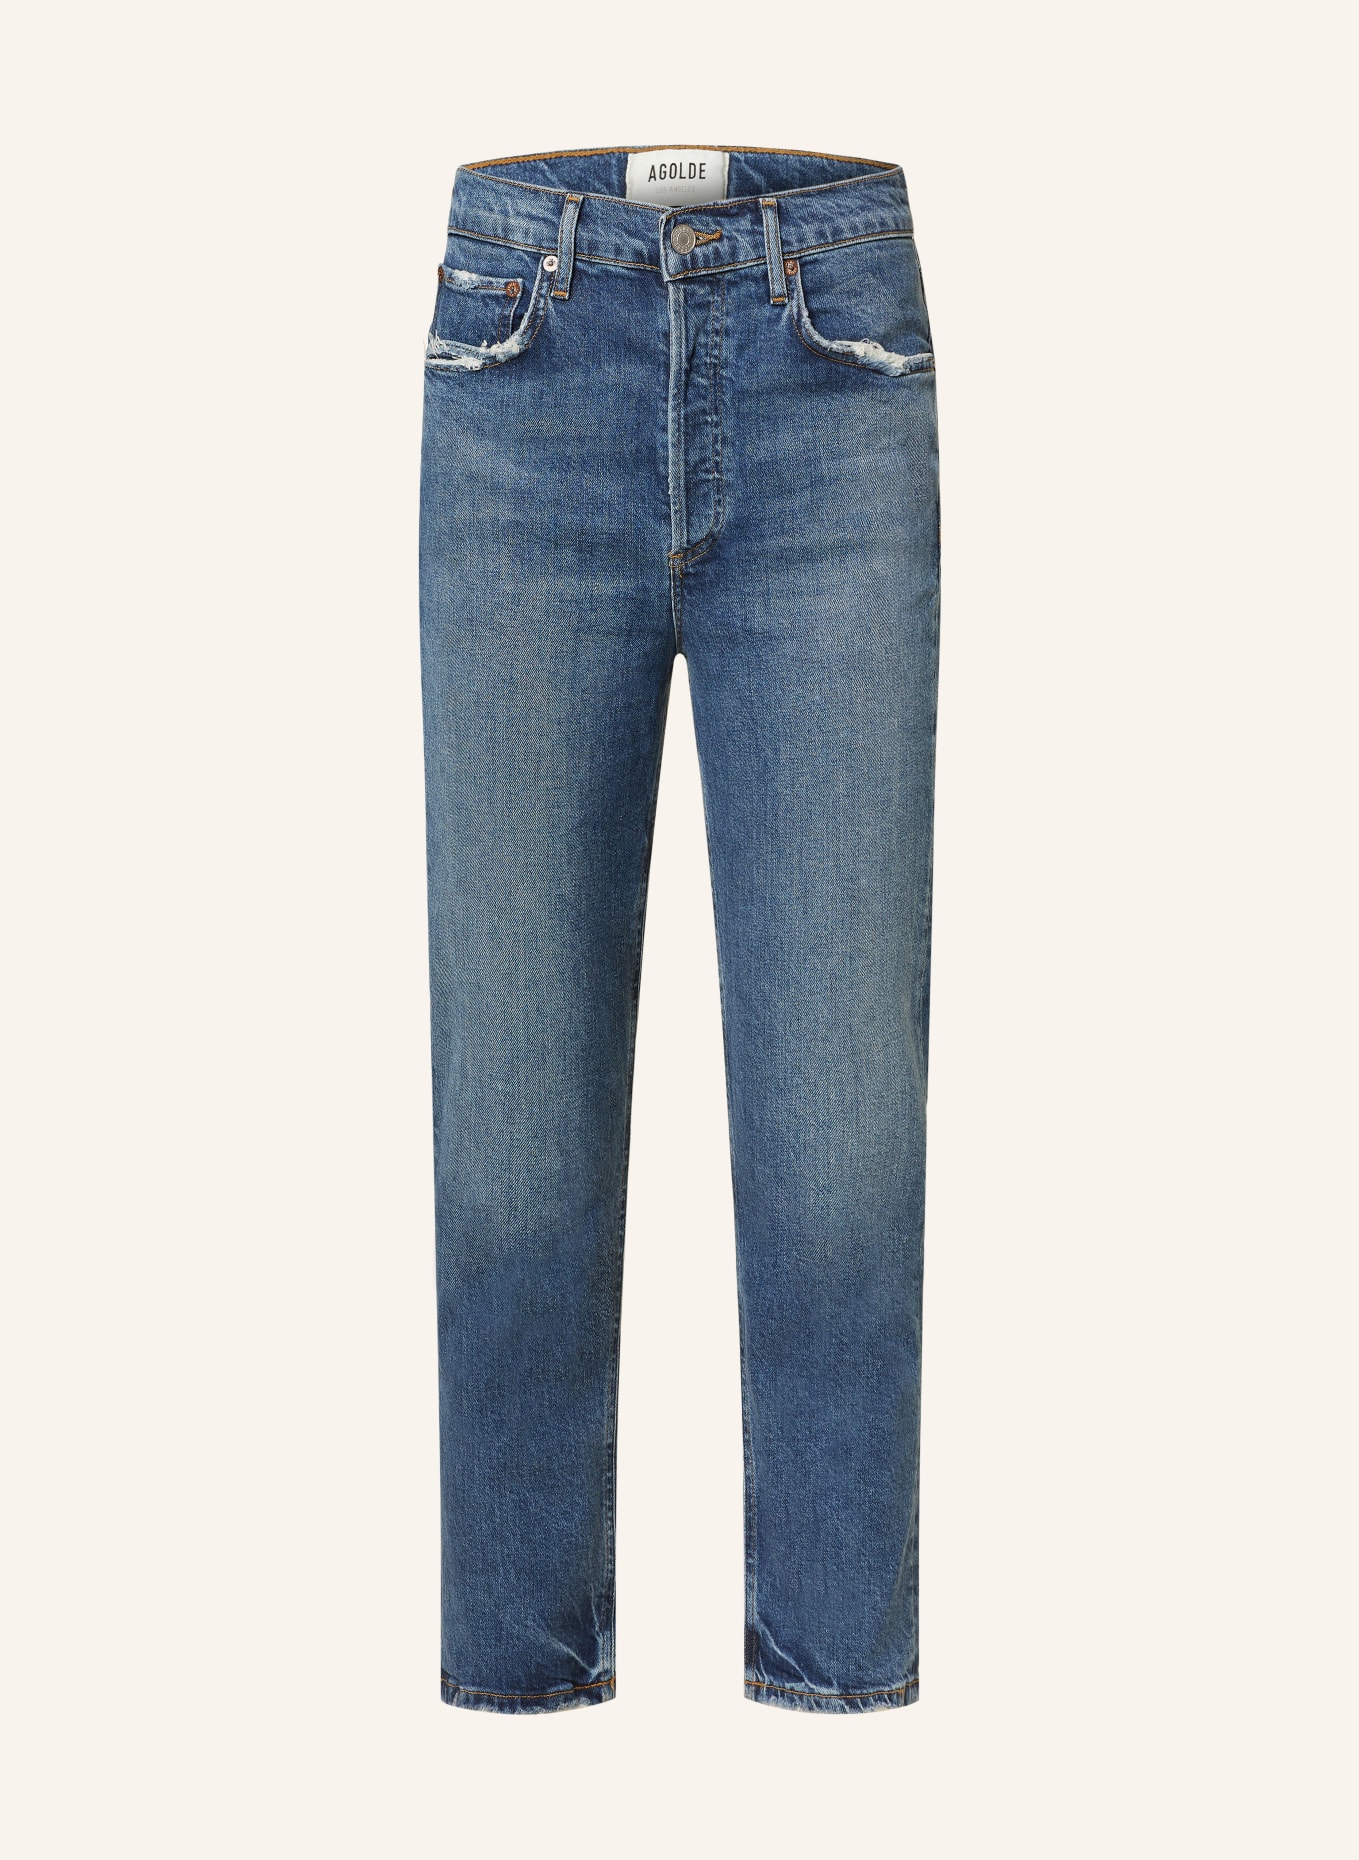 AGOLDE 7/8 jeans RILEY, Color: pose med dk tinted ind (Image 1)